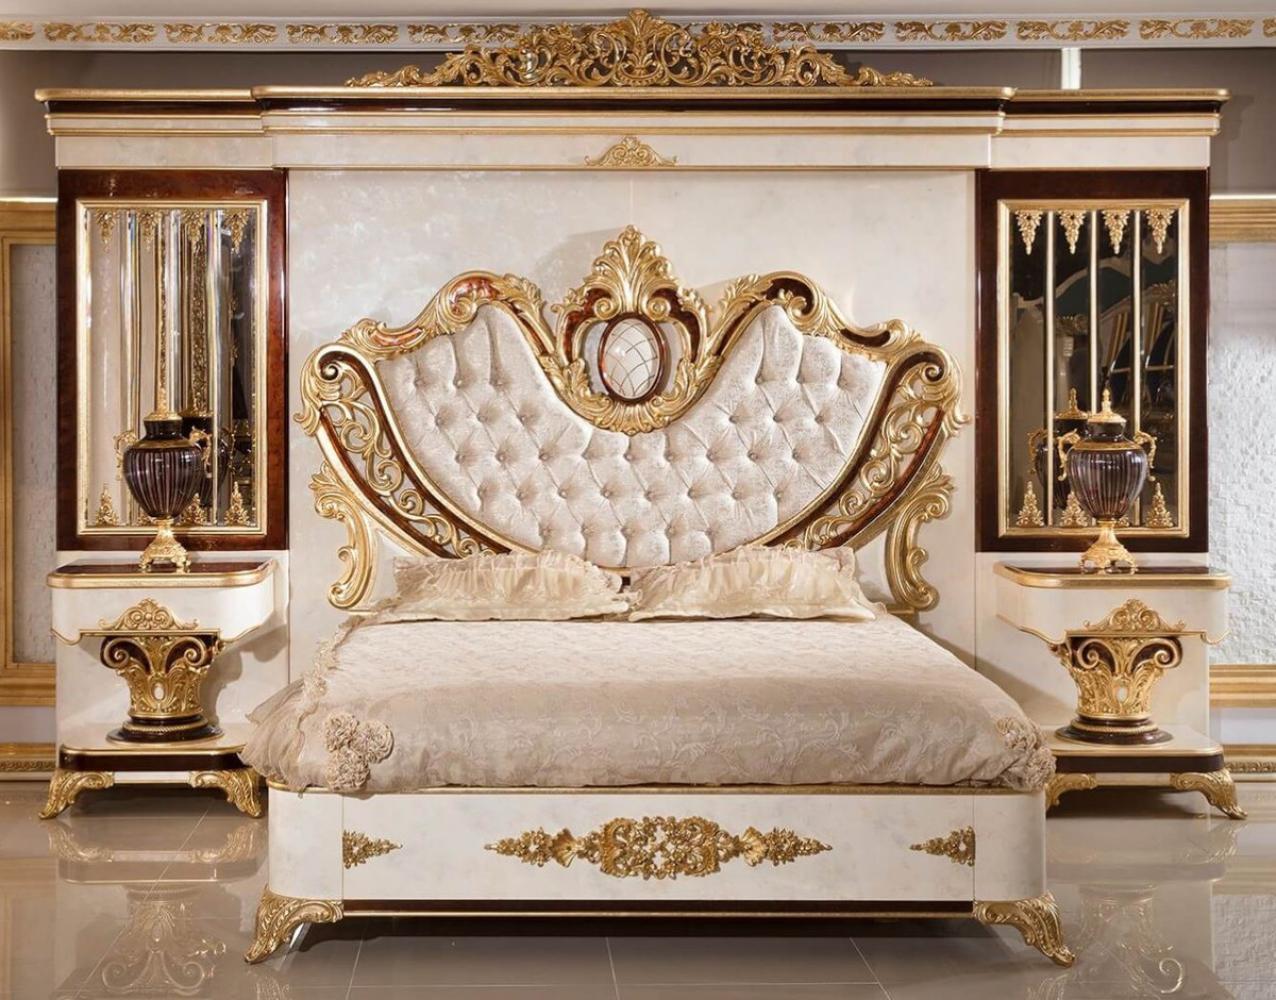 Casa Padrino Luxus Barock Schlafzimmer Set Gold / Weiß / Braun / Gold - 1 Doppelbett mit Kopfteil & 2 Nachtkommoden - Schlafzimmer Möbel im Barockstil - Edel & Prunkvoll Bild 1